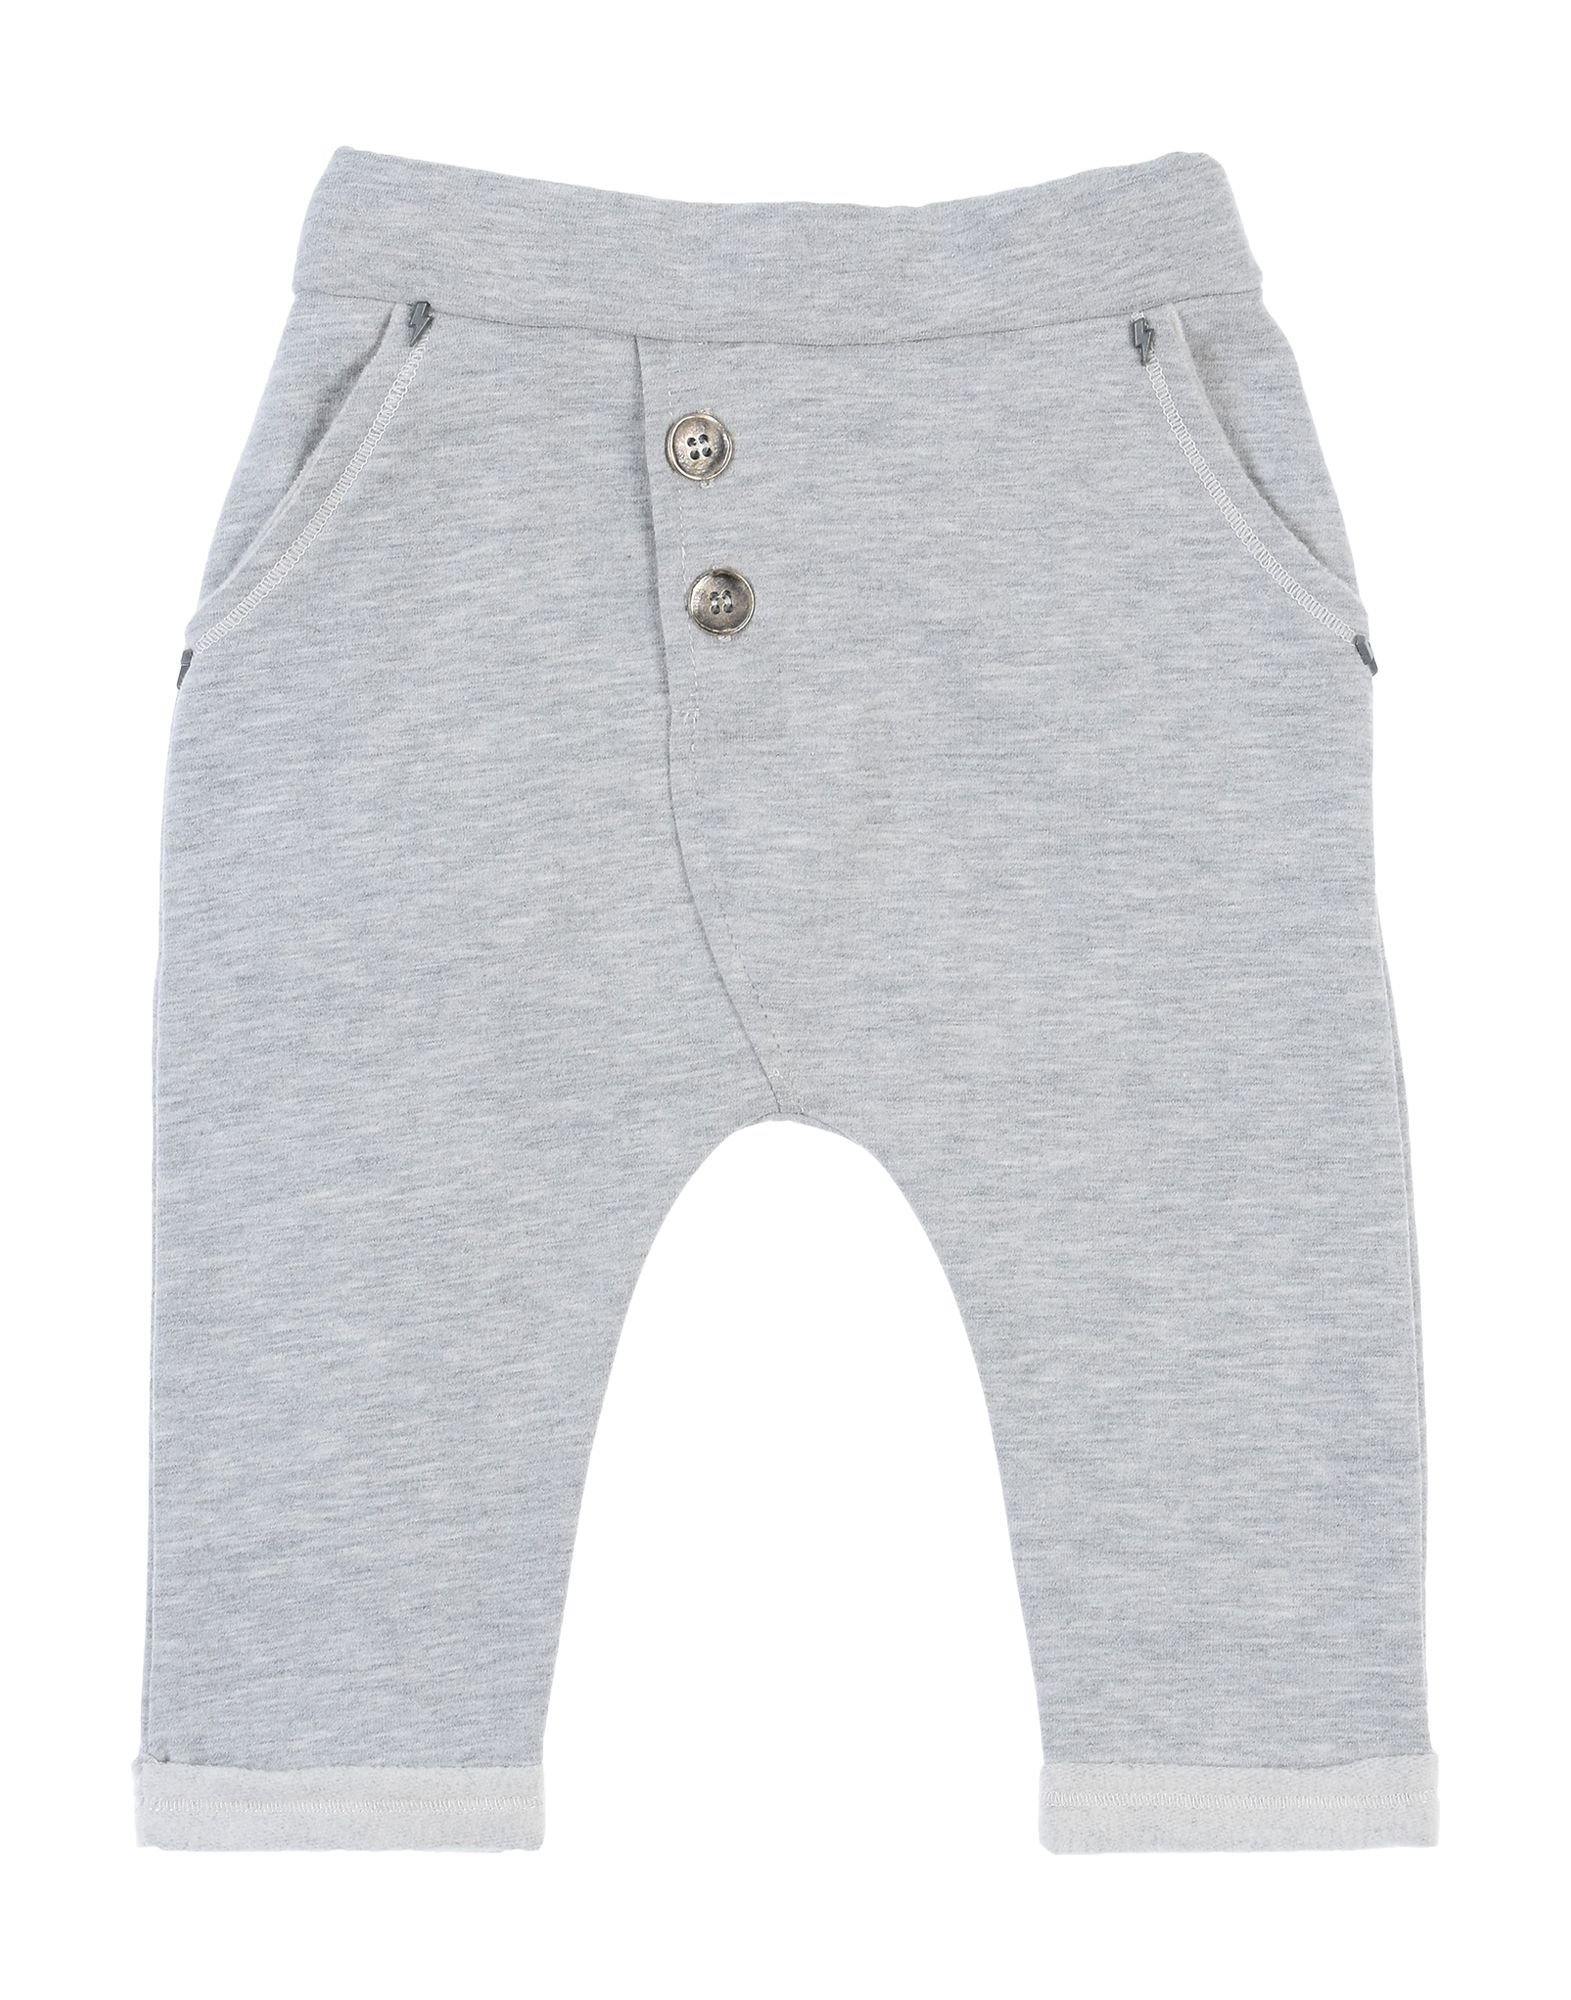 Mapero Kids' Pants In Light Grey